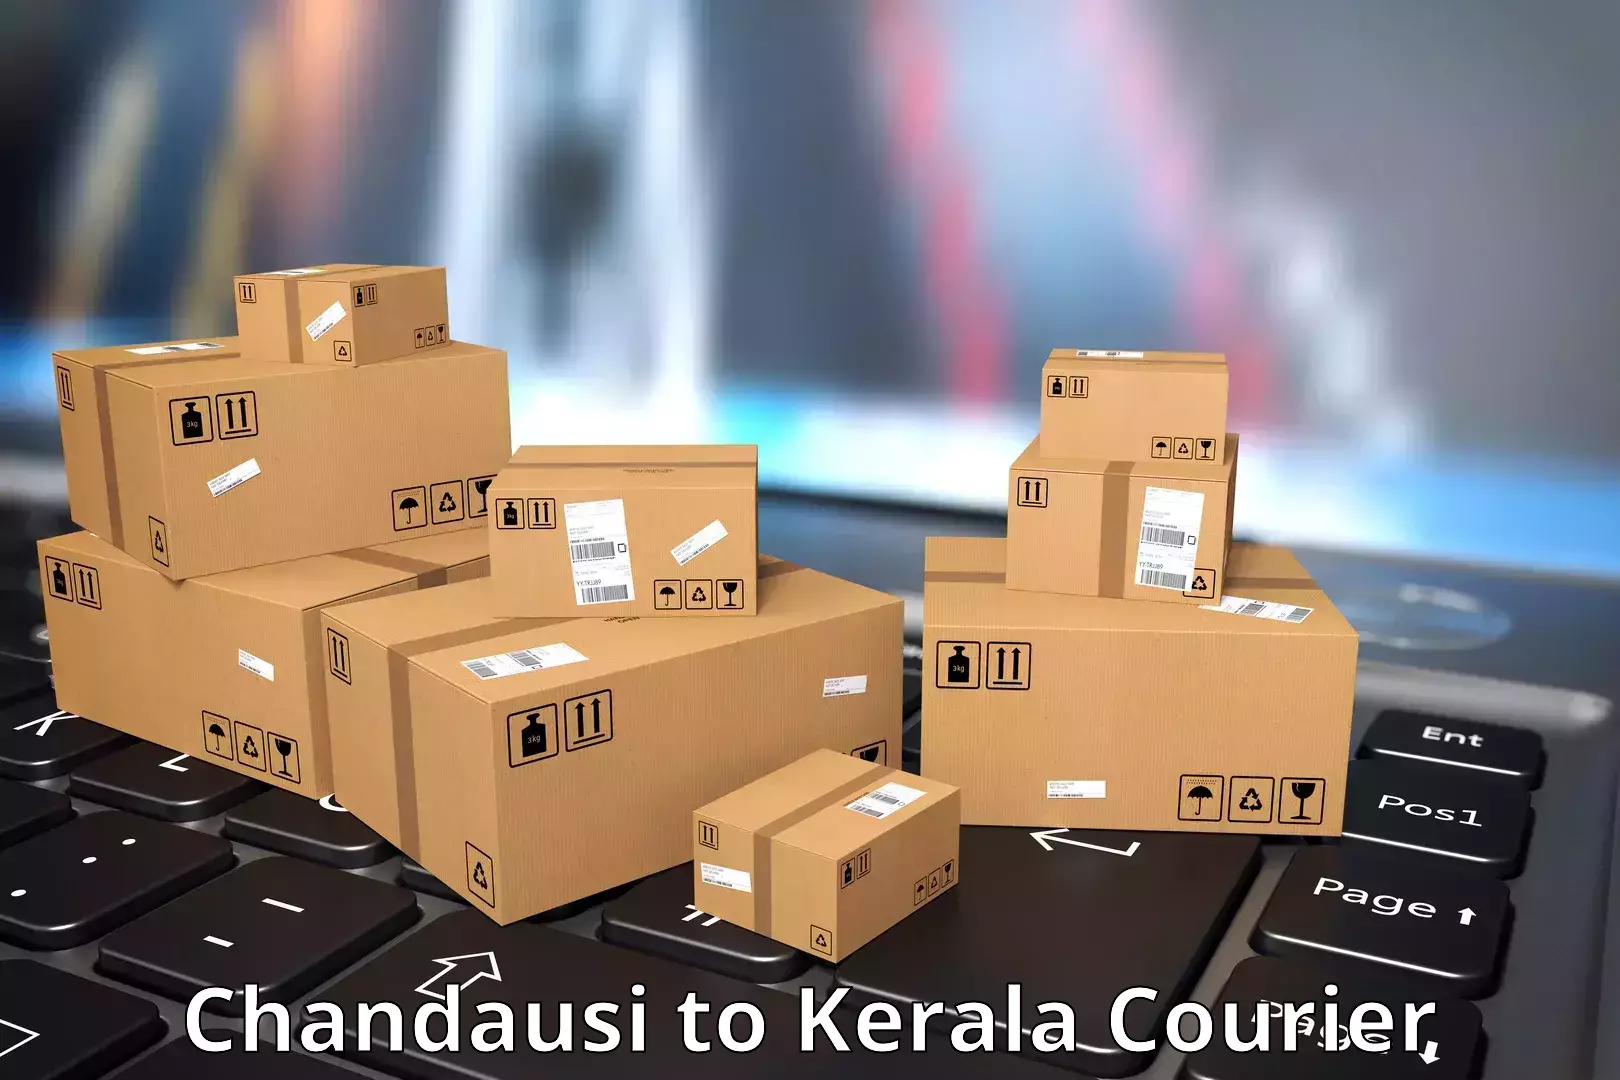 Express courier capabilities Chandausi to Kerala